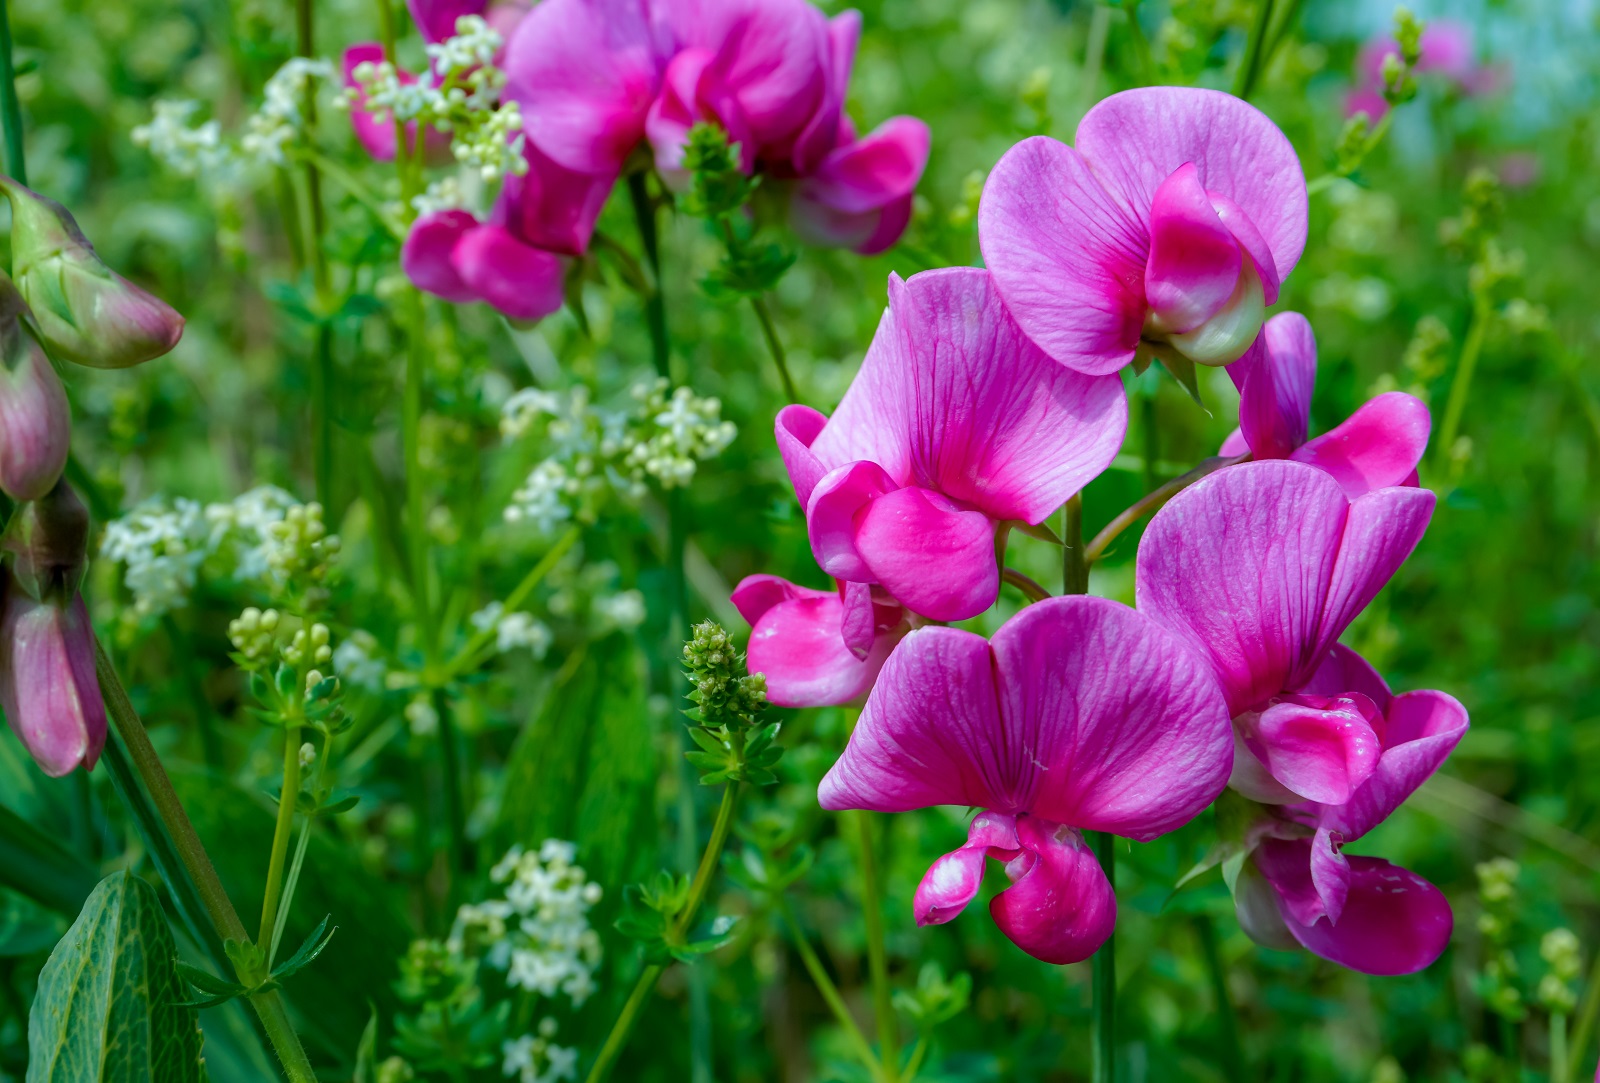 Magnifiques fleurs de pois de senteur. © Paul Cartwright, Adobe Stock